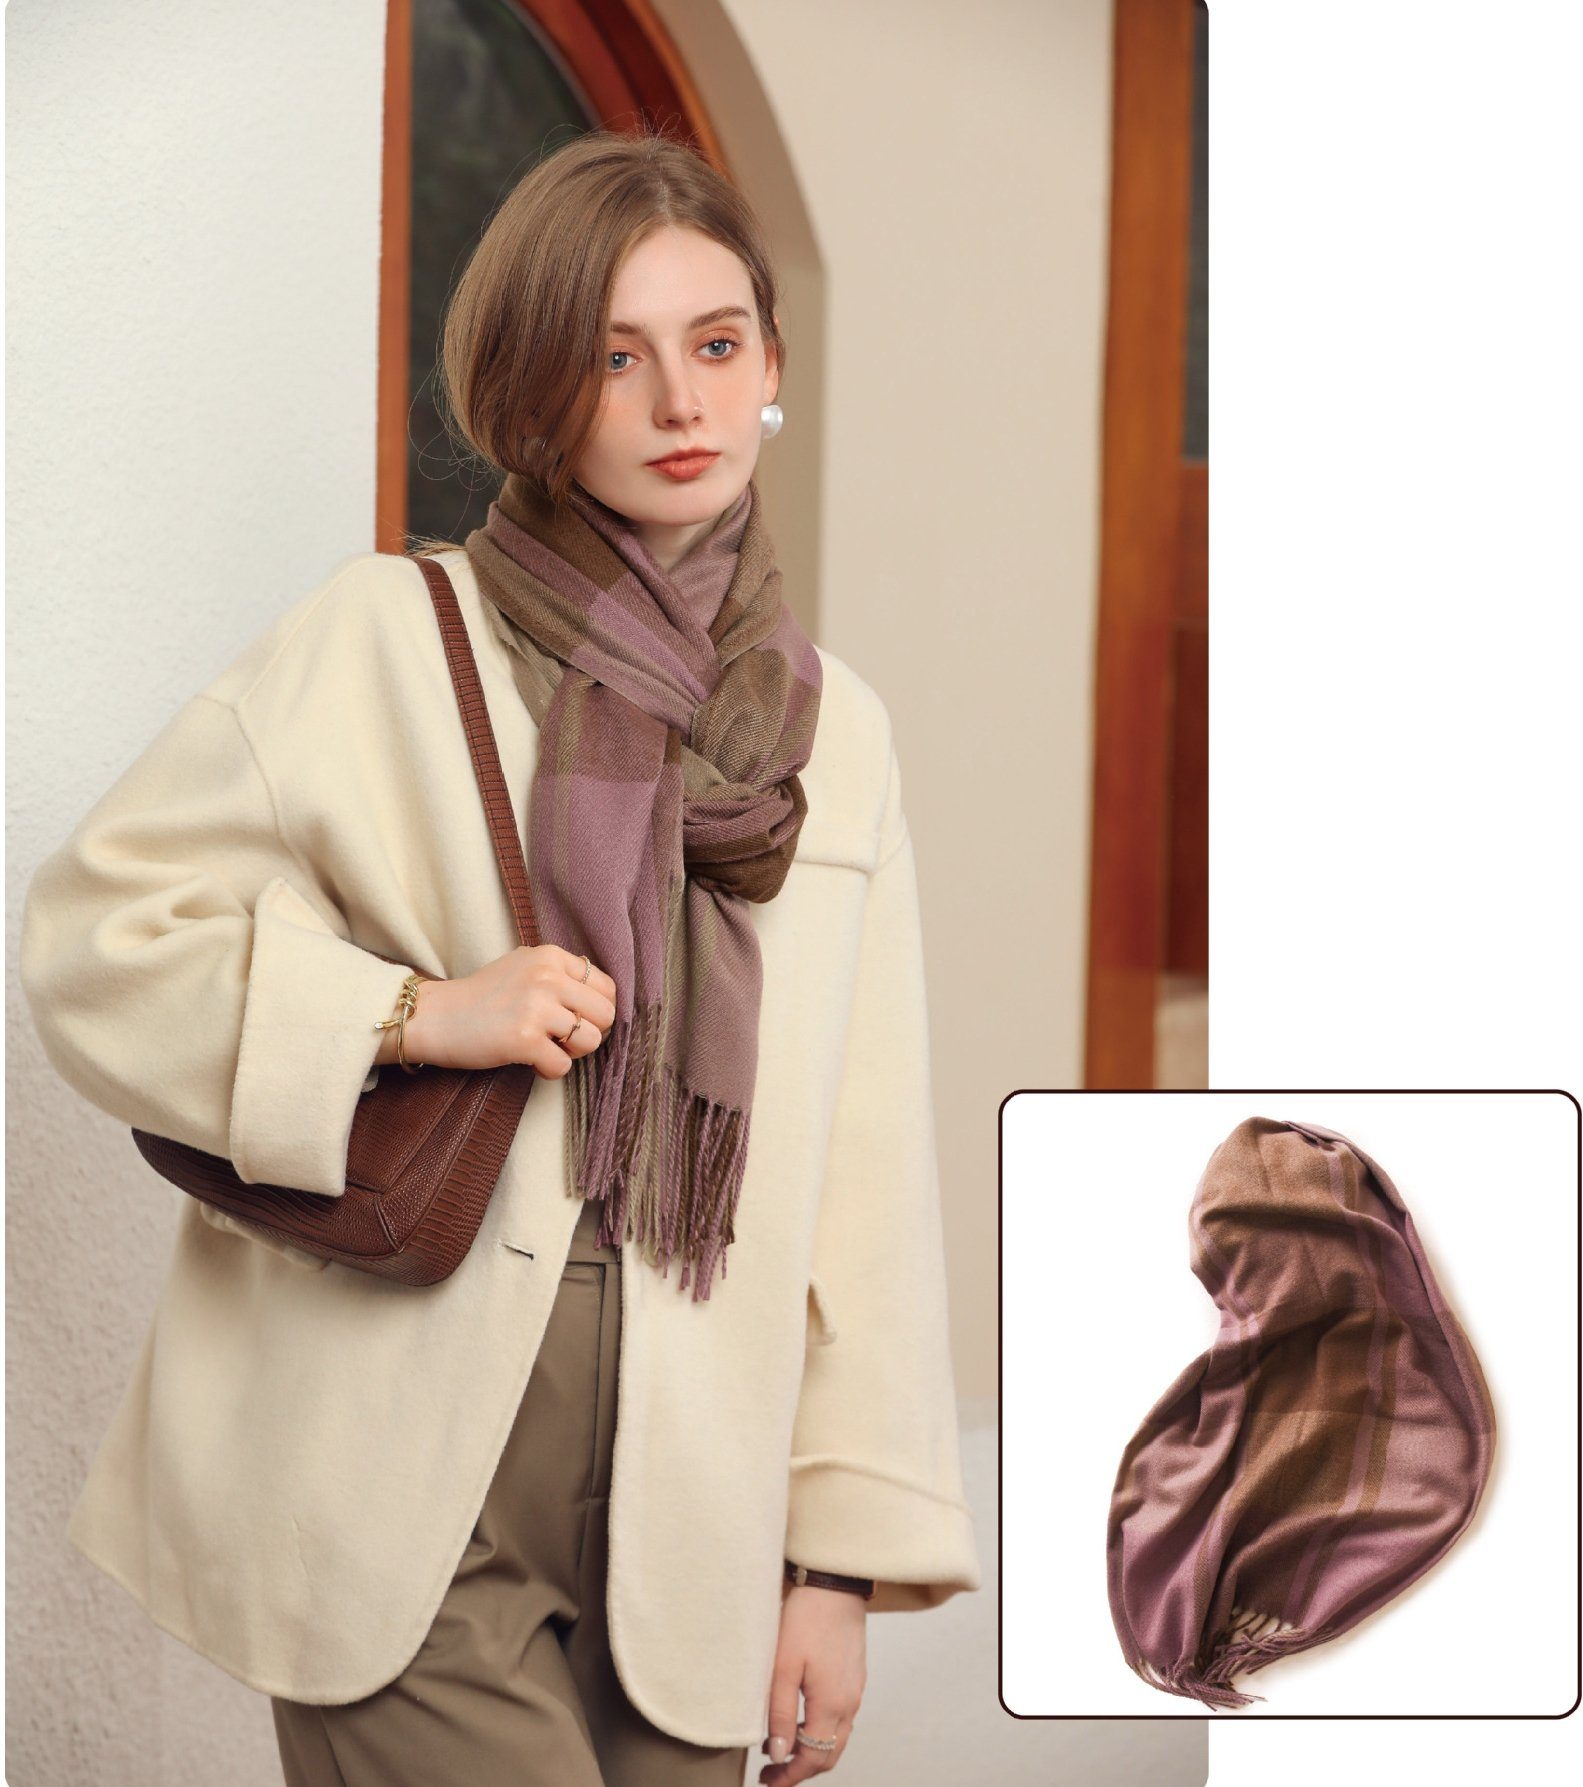 SOTOR Halstuch Winterschal weiblich Schal verdickt warm Mode lässig Schal, Elegantes Gittermuster, 65cm x 180cm.